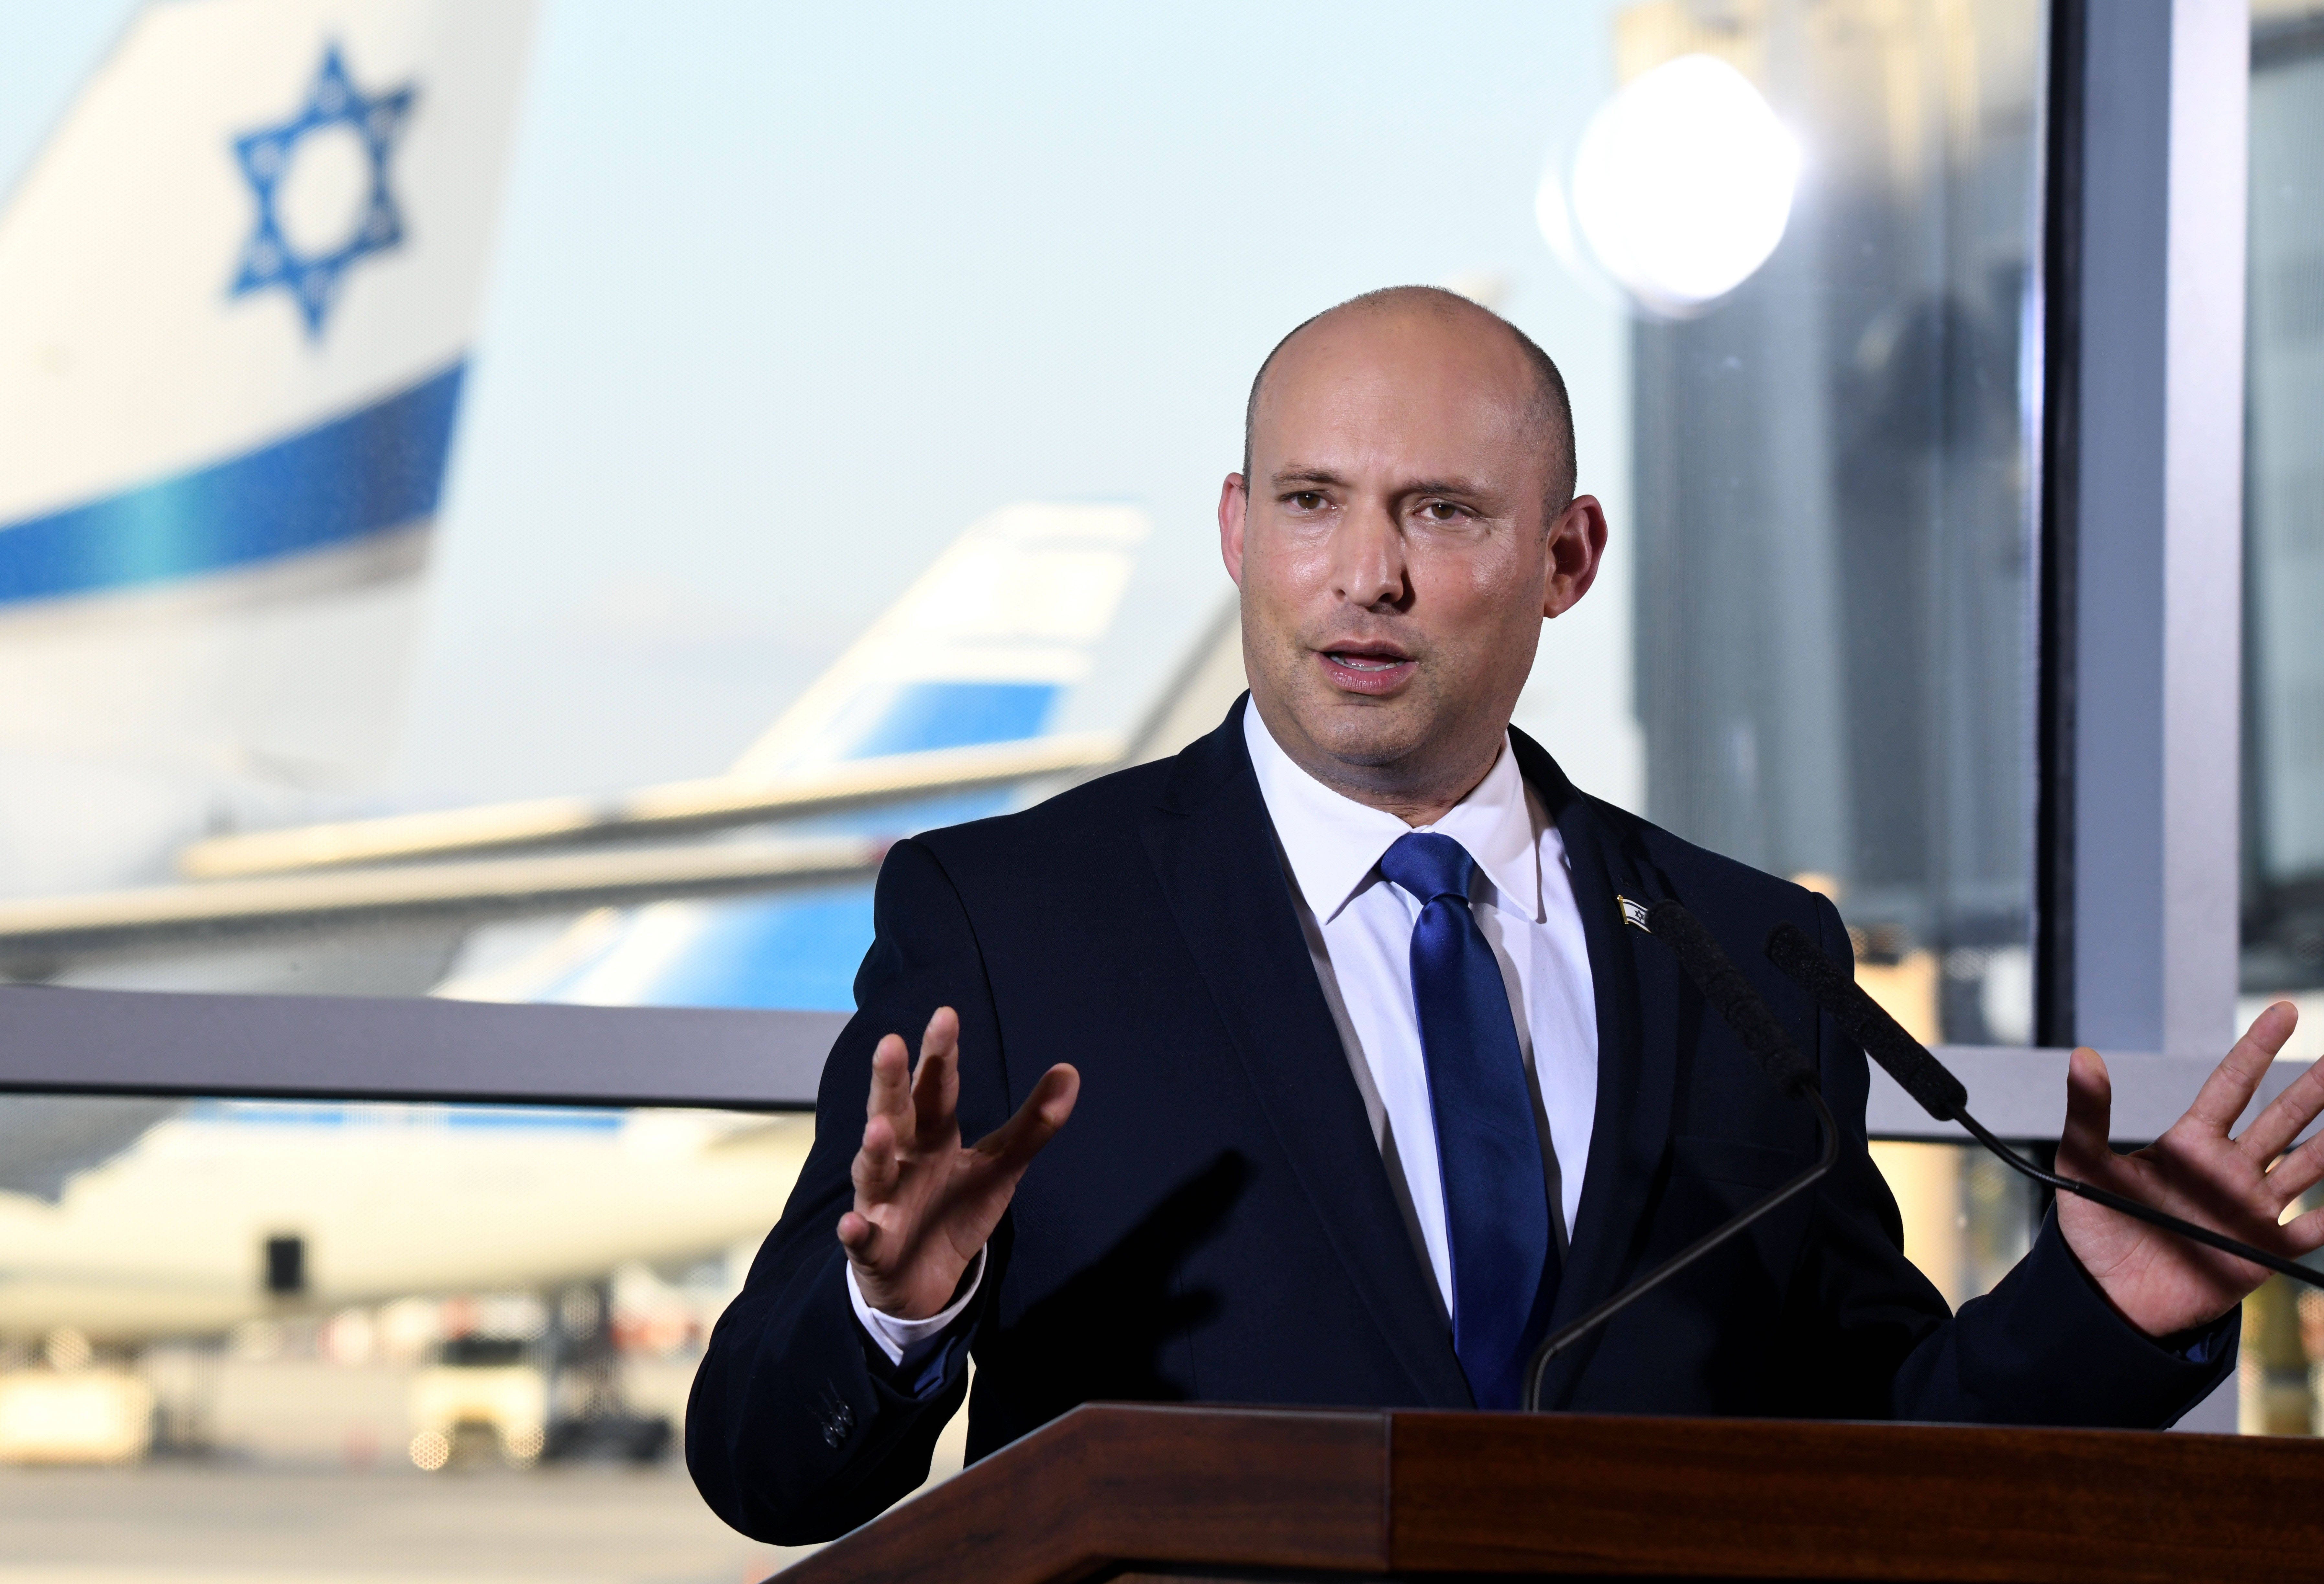 6月22日,以色列总理贝内特在本古里安国际机场发表电视声明